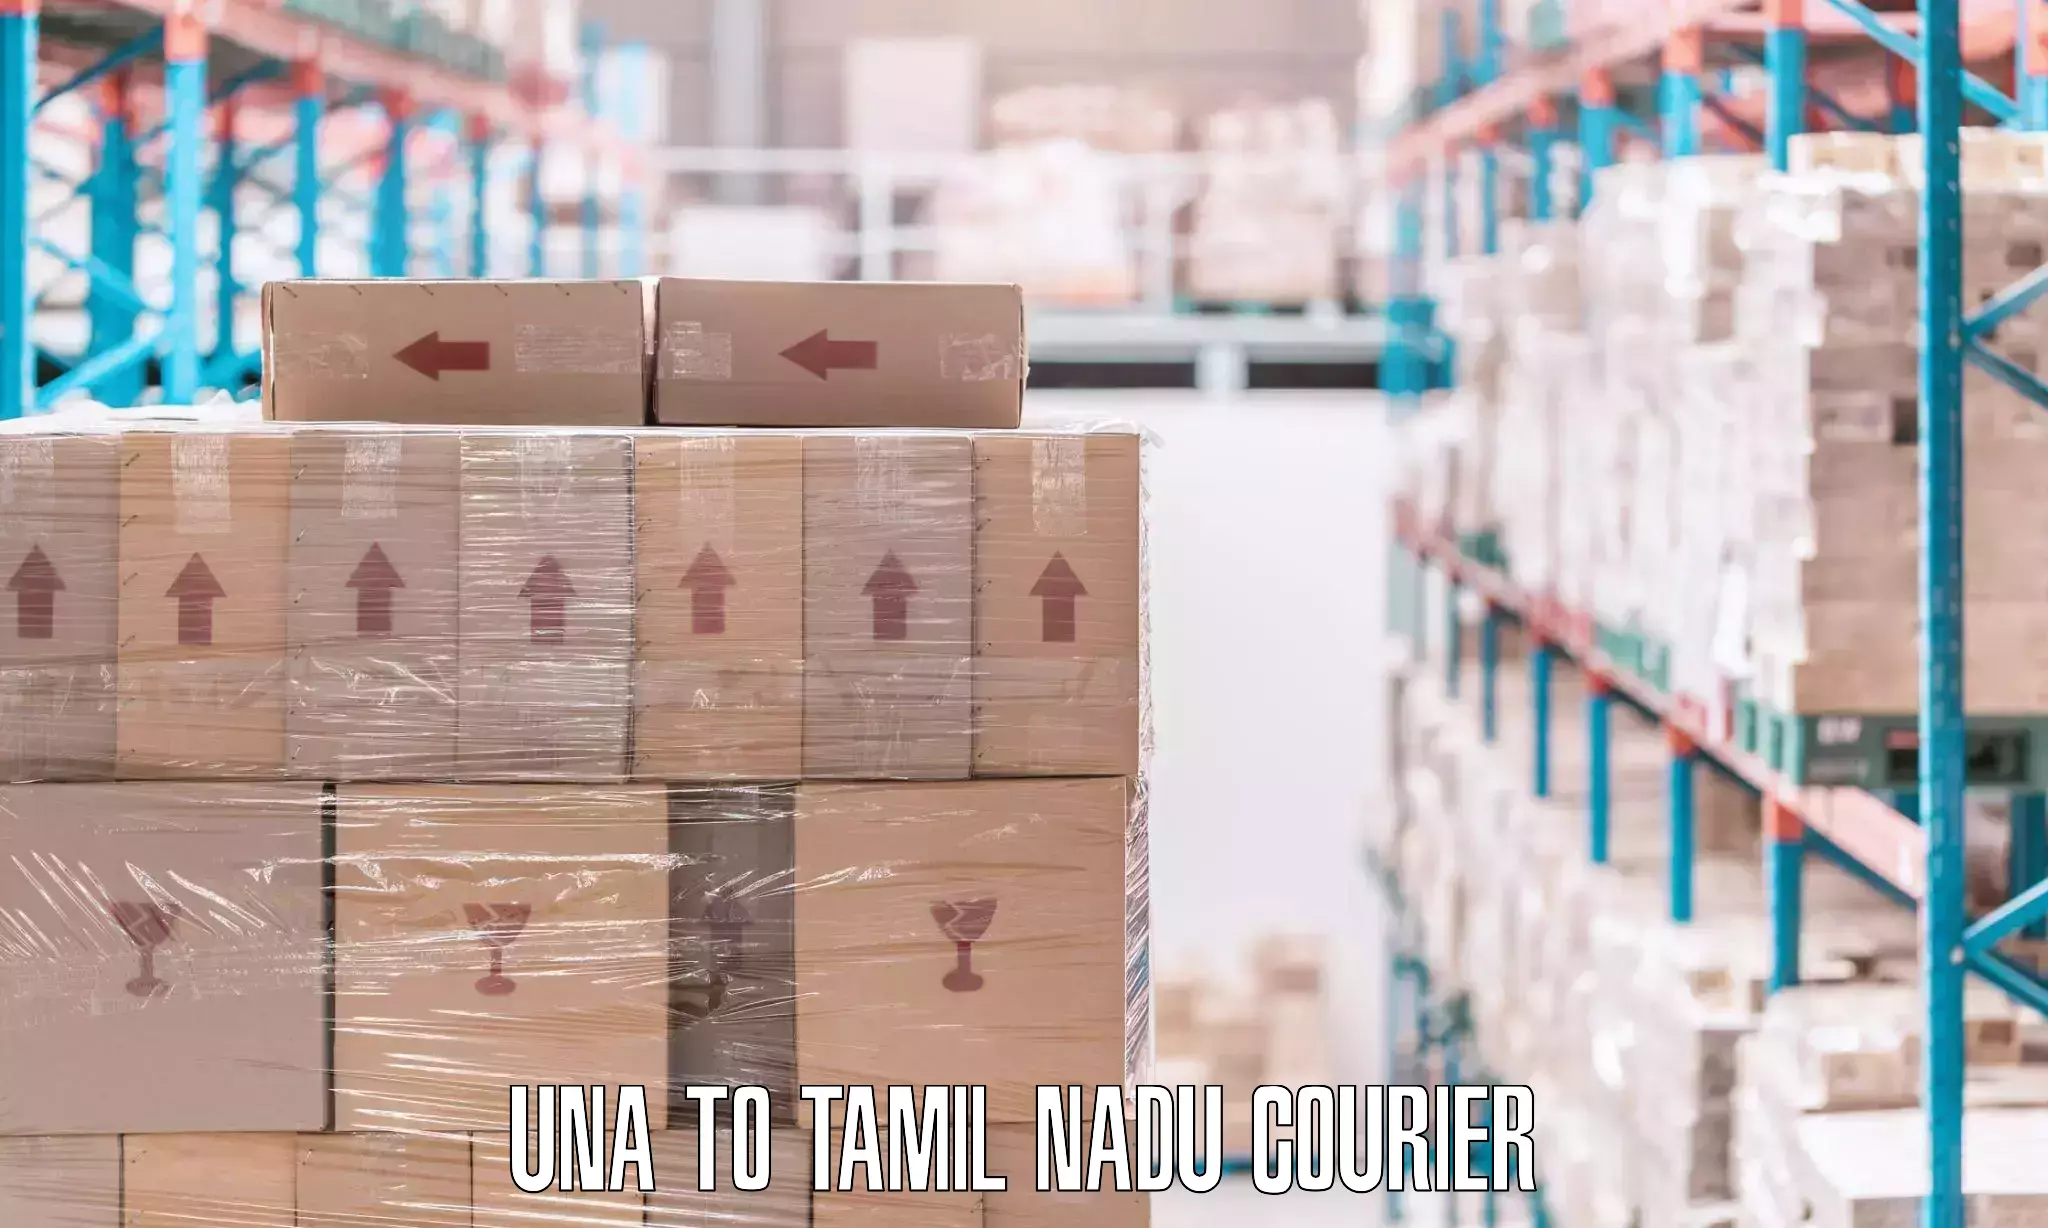 Furniture transport company Una to Tamil Nadu